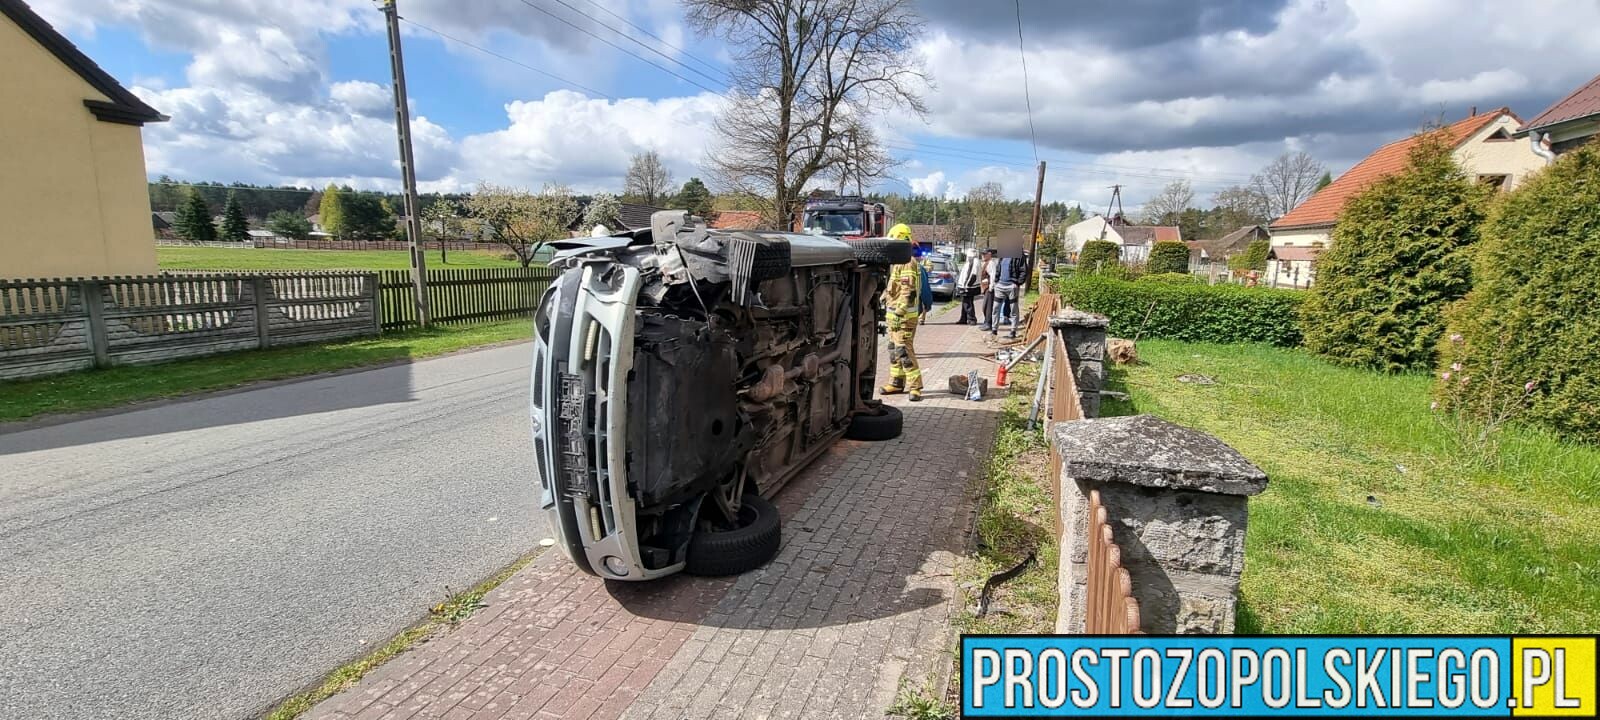 67-letni kierowca nie dostosował prędkości i uderzył w ogrodzenie w miejscowości Ładza, w powiecie namysłowskim.